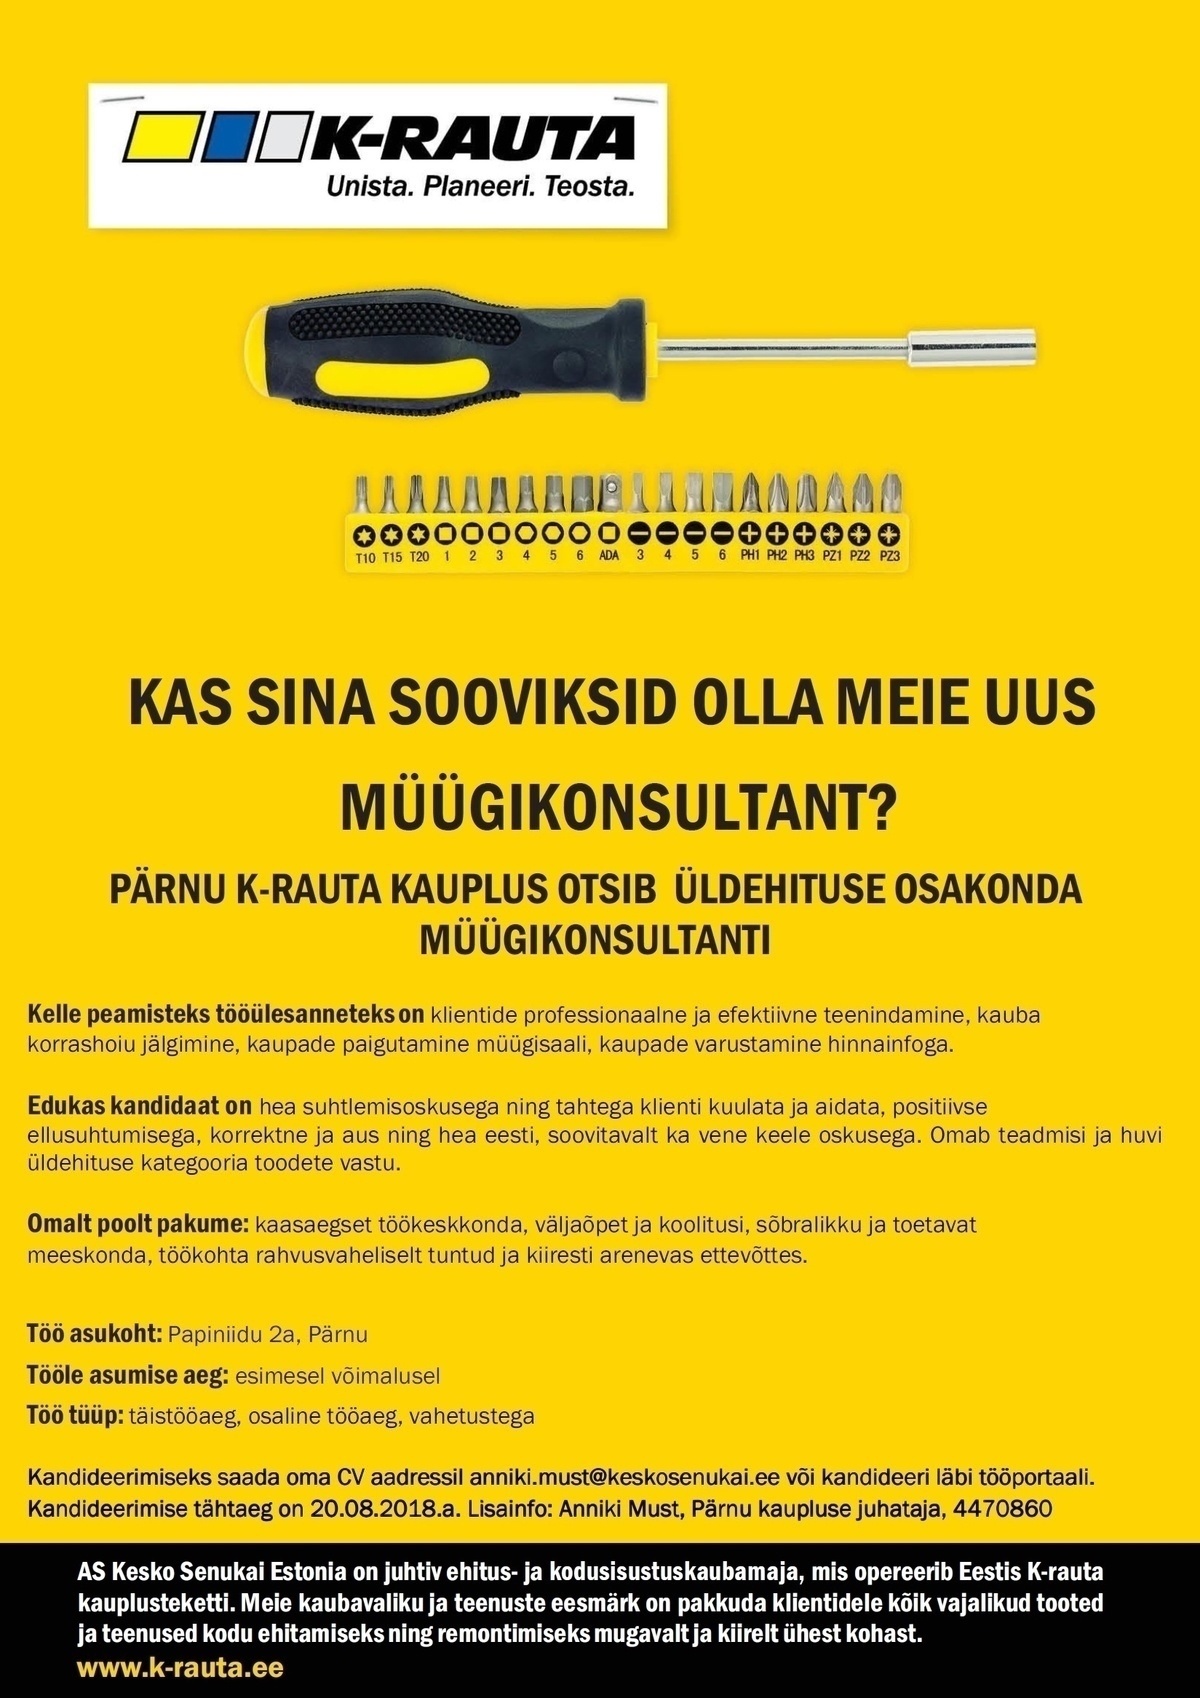 AS Kesko Senukai Estonia Müügikonsultant üldehitus Pärnu K-rauta